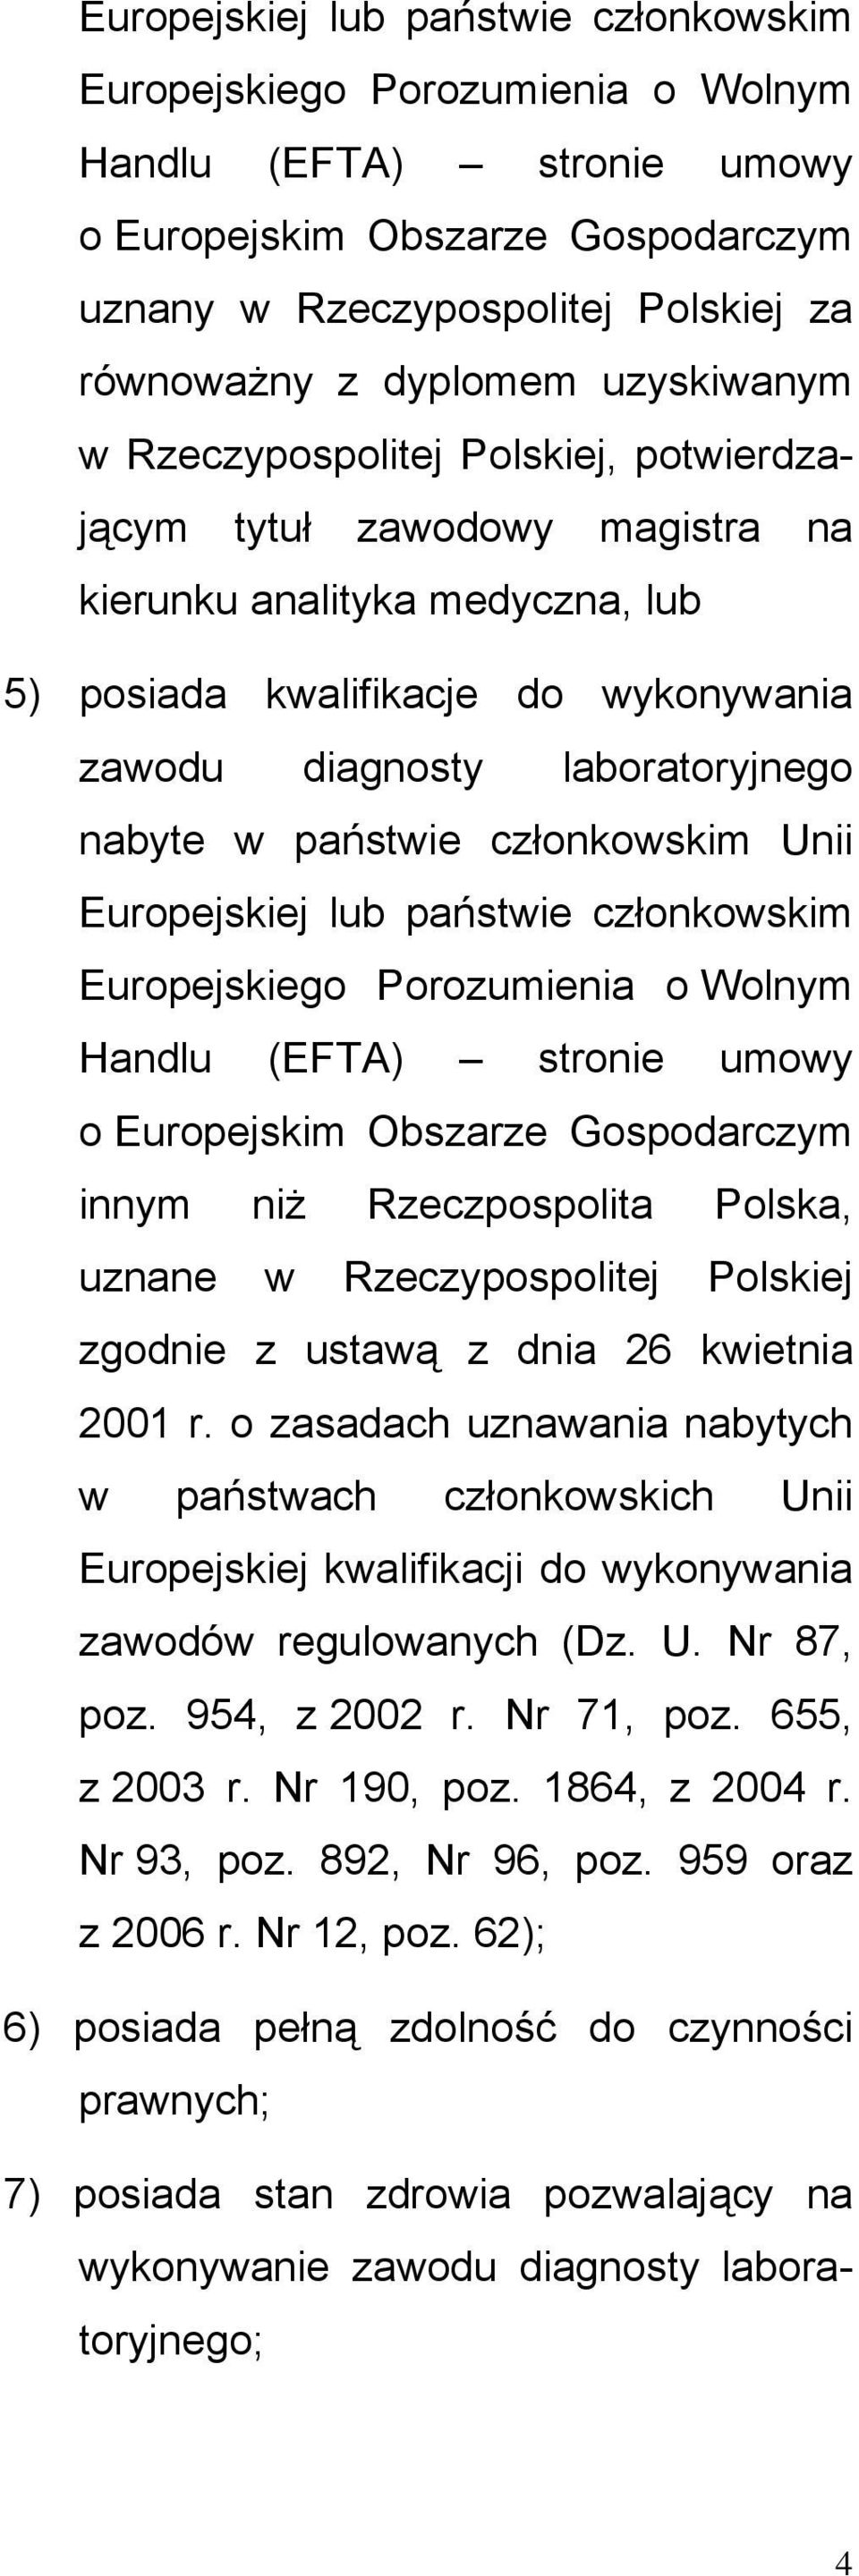 państwie członkowskim Unii Europejskiej lub państwie członkowskim Europejskiego Porozumienia o Wolnym Handlu (EFTA) stronie umowy o Europejskim Obszarze Gospodarczym innym niż Rzeczpospolita Polska,